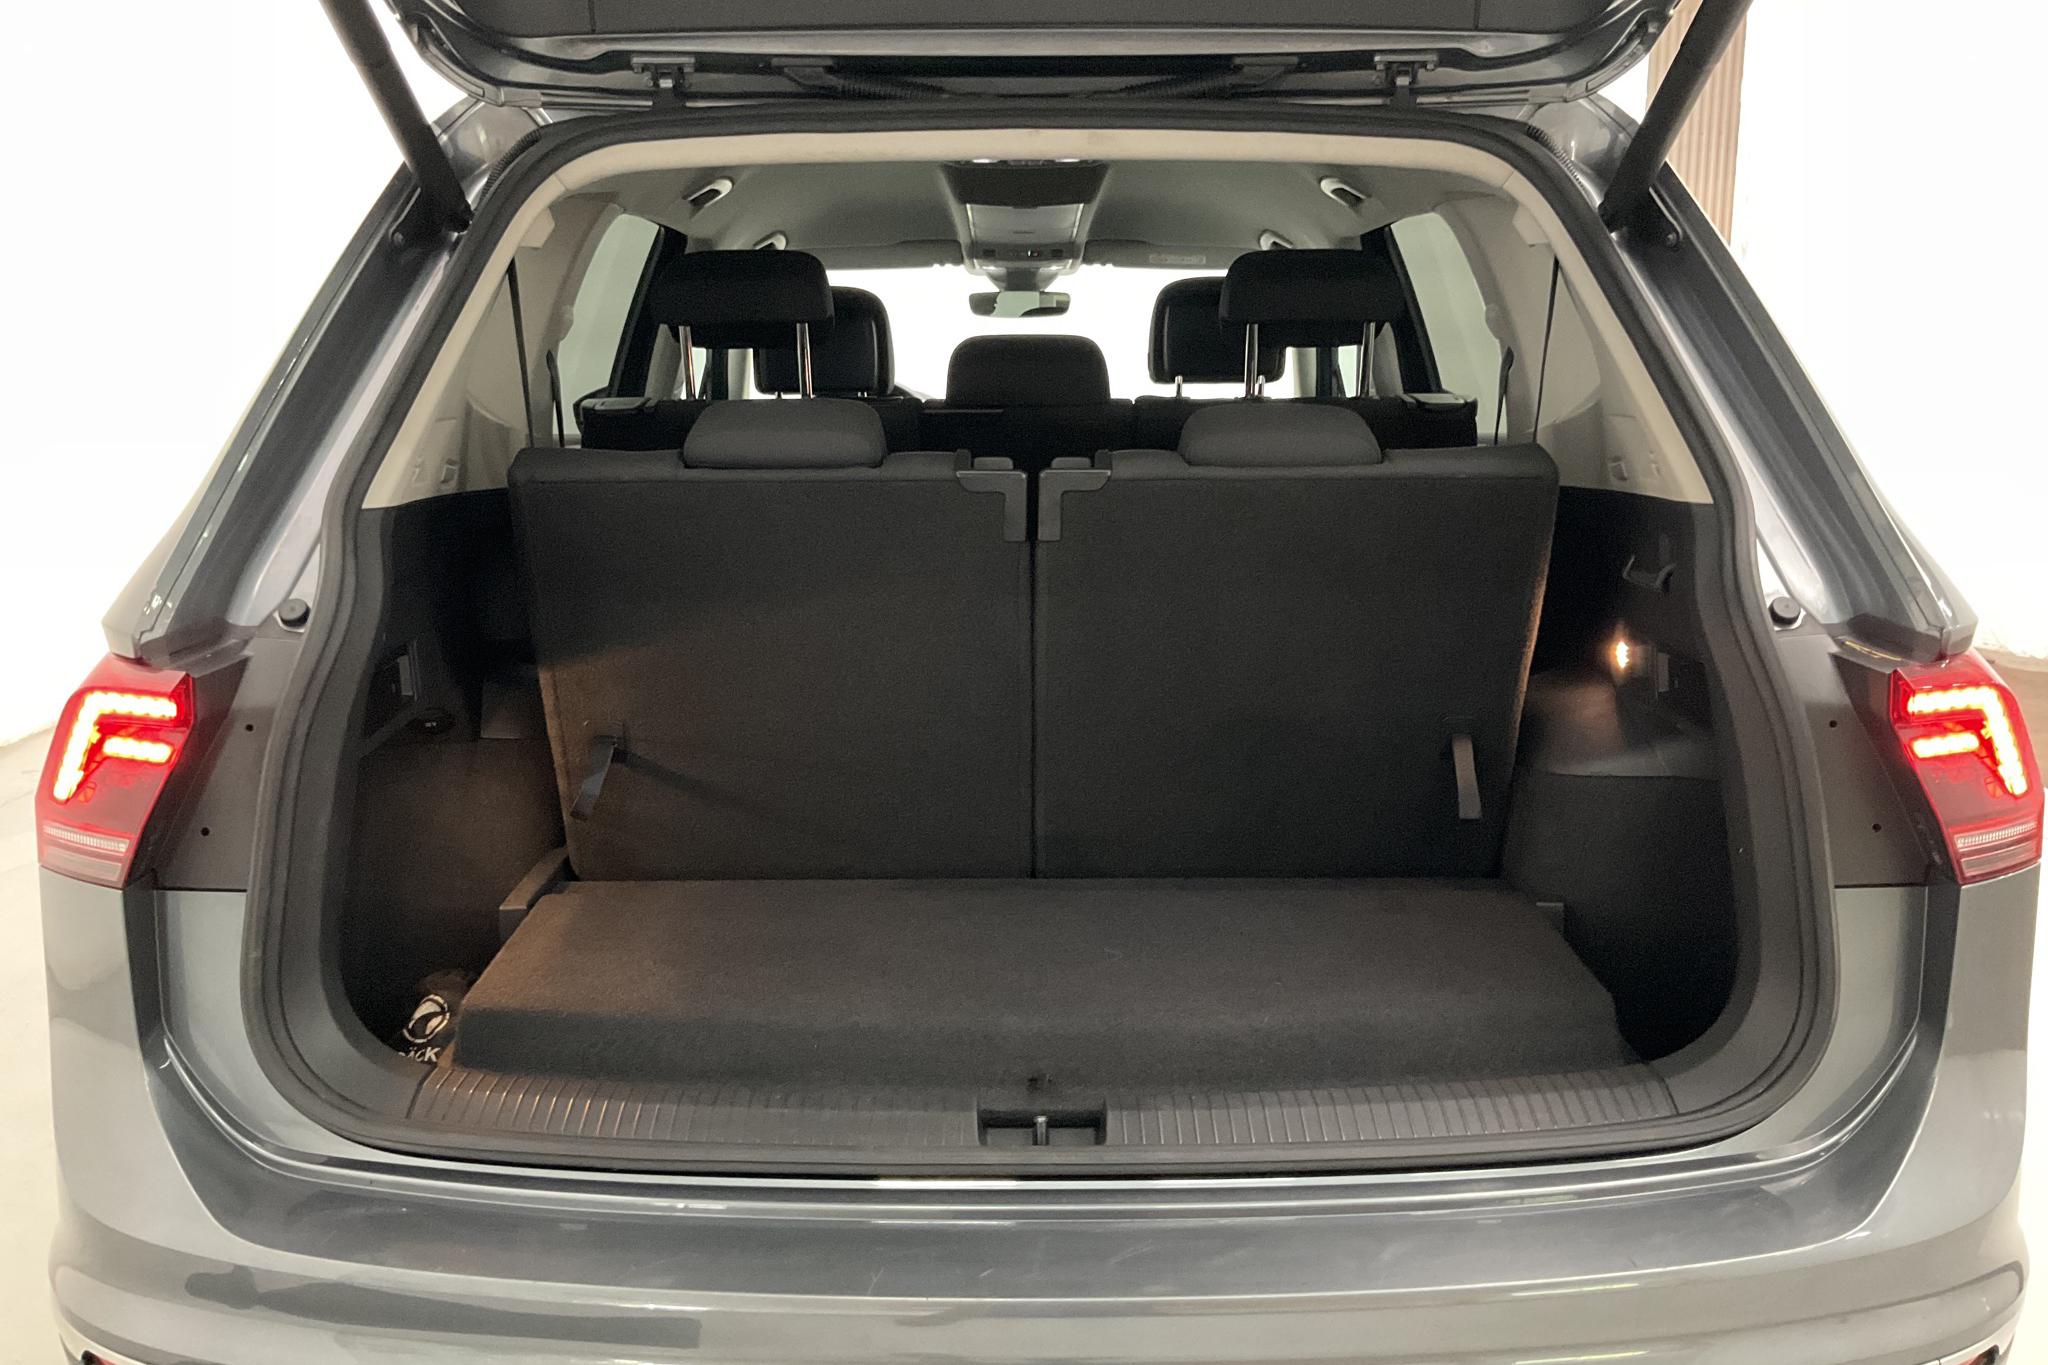 VW Tiguan Allspace 2.0 TDI 4MOTION (190hk) - 58 850 km - Automatic - gray - 2019